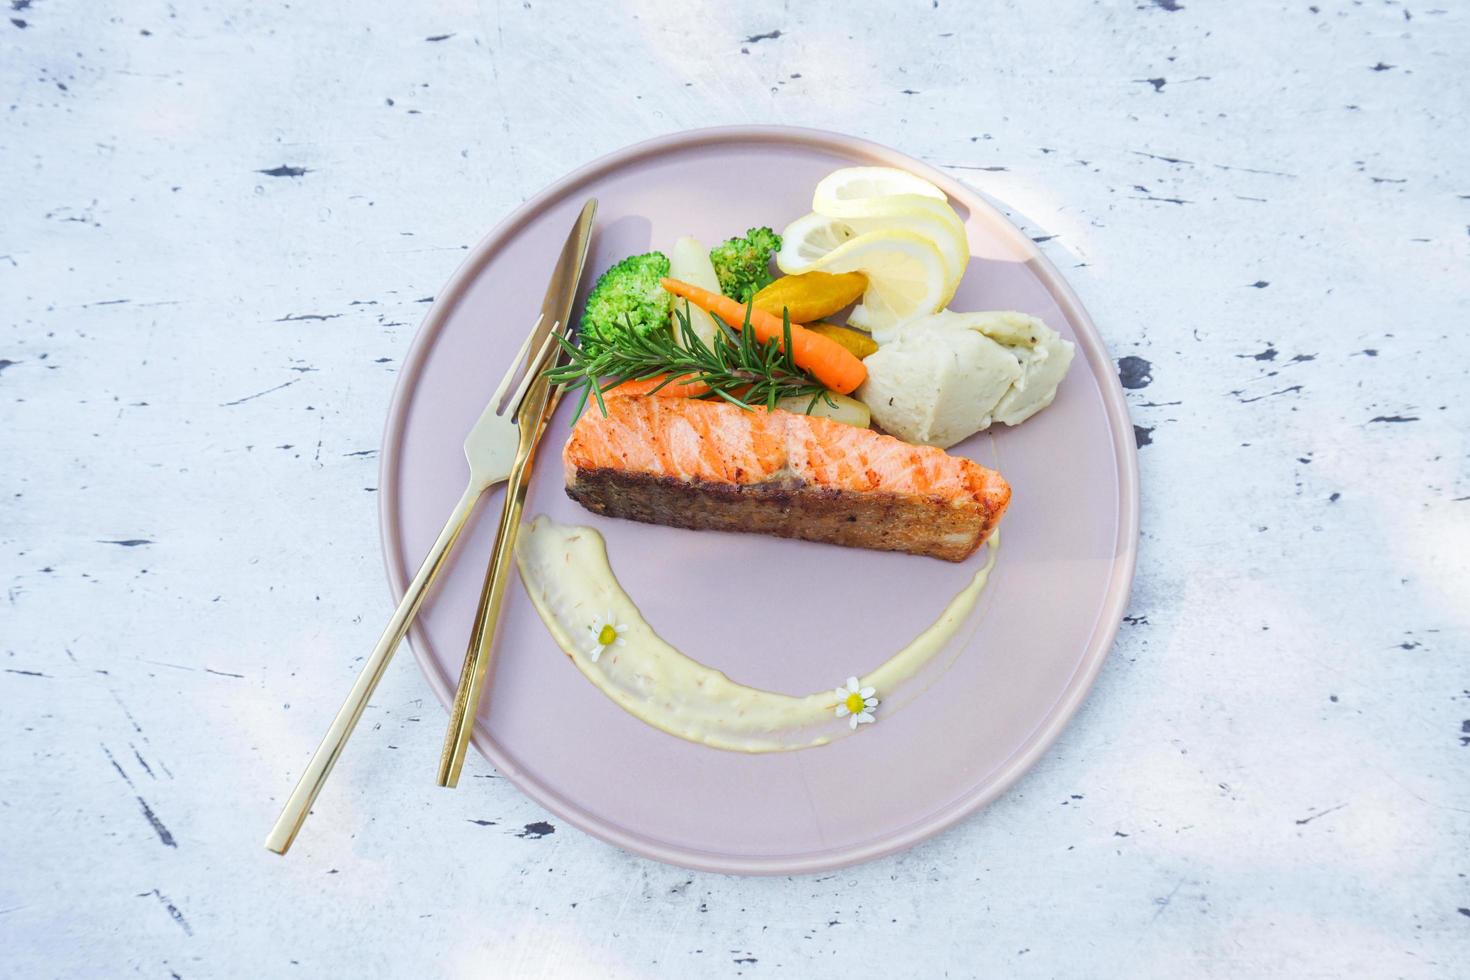 steak zalm met groente broccoli wortel rozemarijn en citroen op bord zeevruchten - geroosterde of gegrilde zalm steak vis op eettafel eten buiten foto